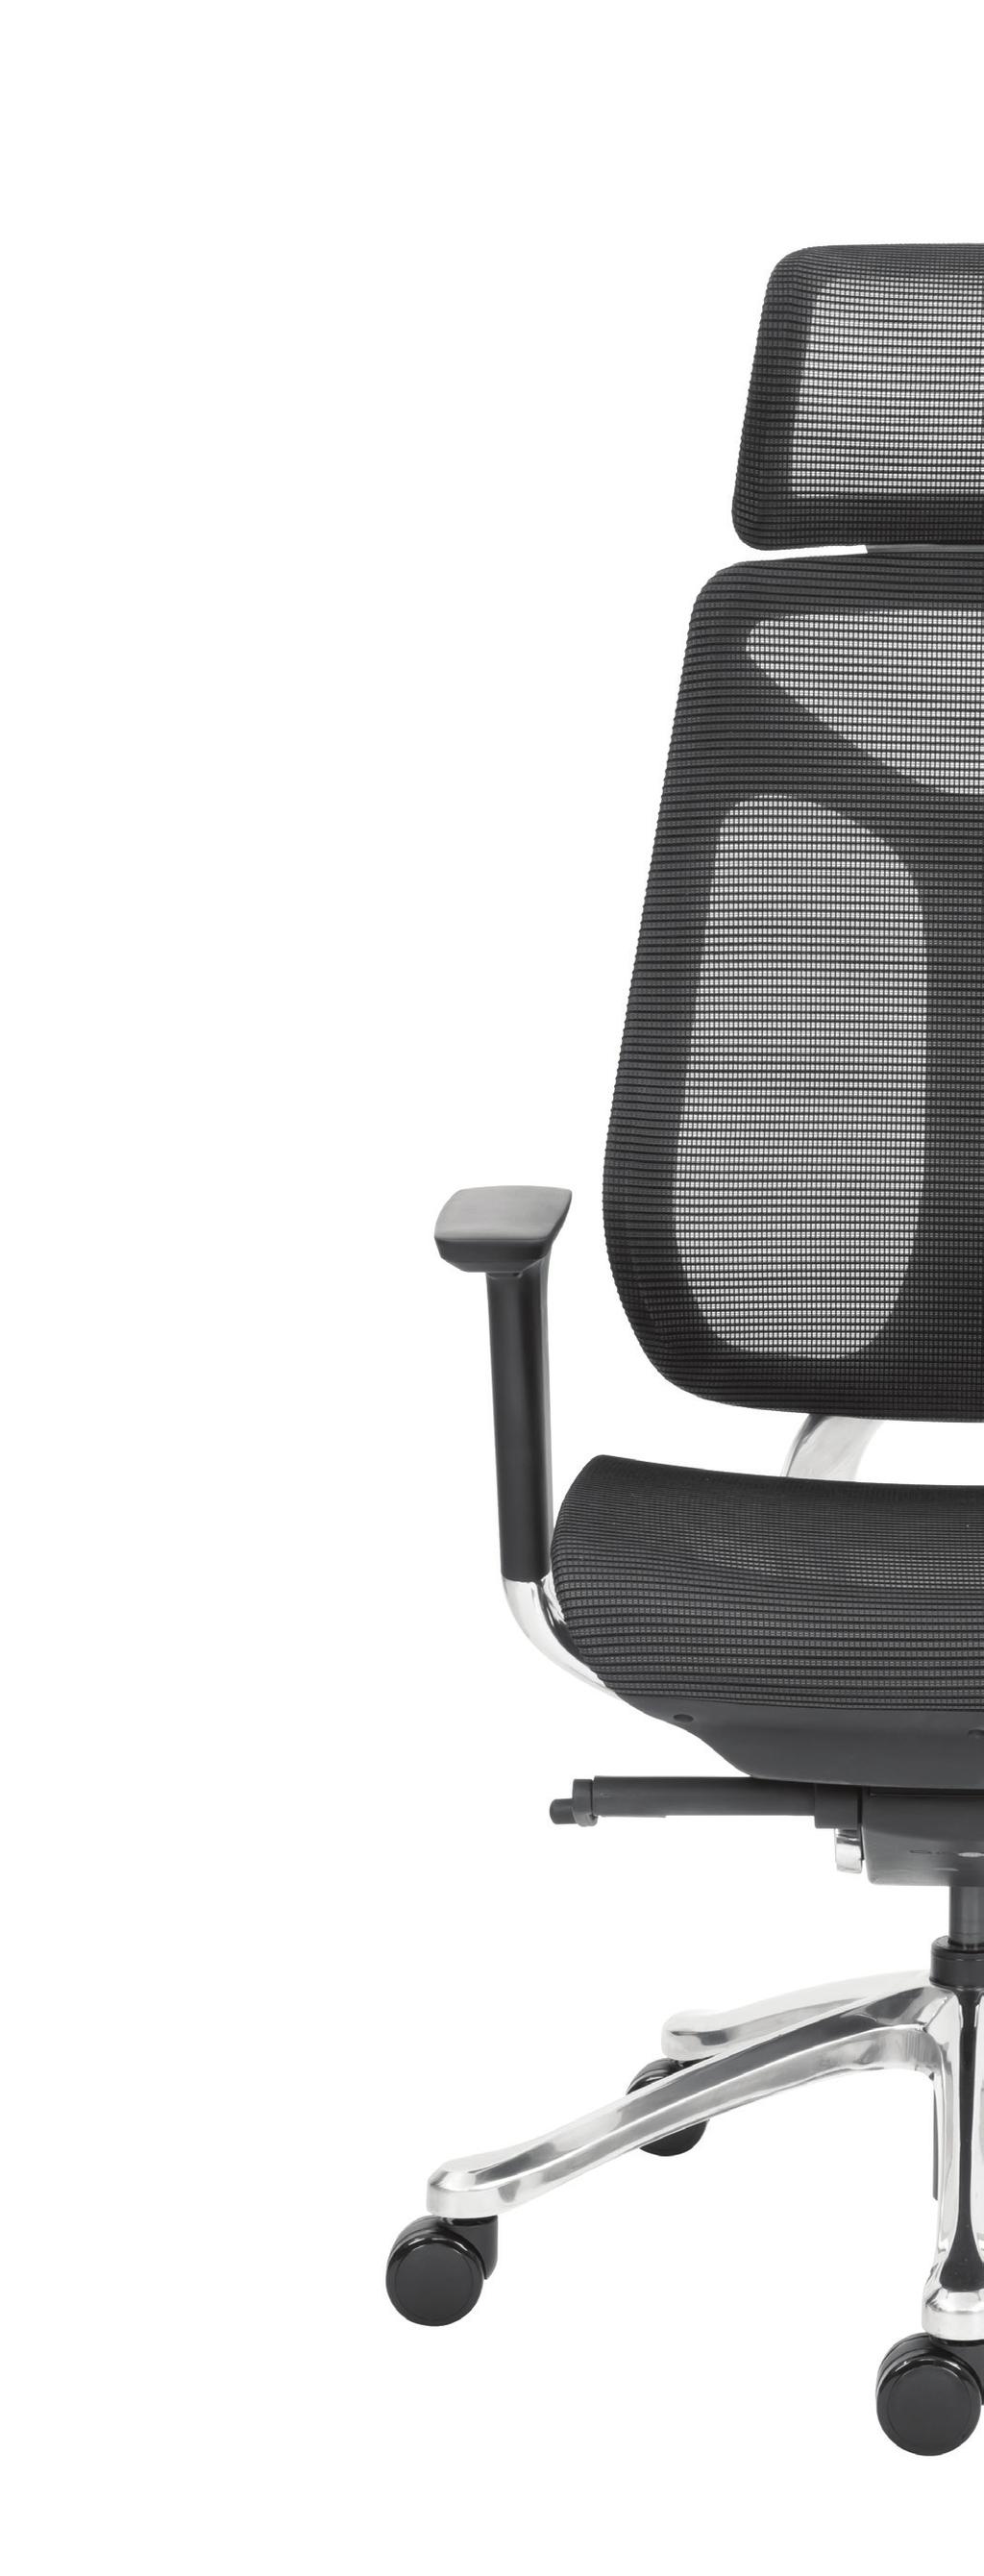 13 Židle MOVE je moderní židle s atraktivním designem a výbornou ergonomií sezení. Velký důraz na kvalitu zpracování a volbu materiálů ji řadí mezi moderní židle pro dlouhodobé použití.